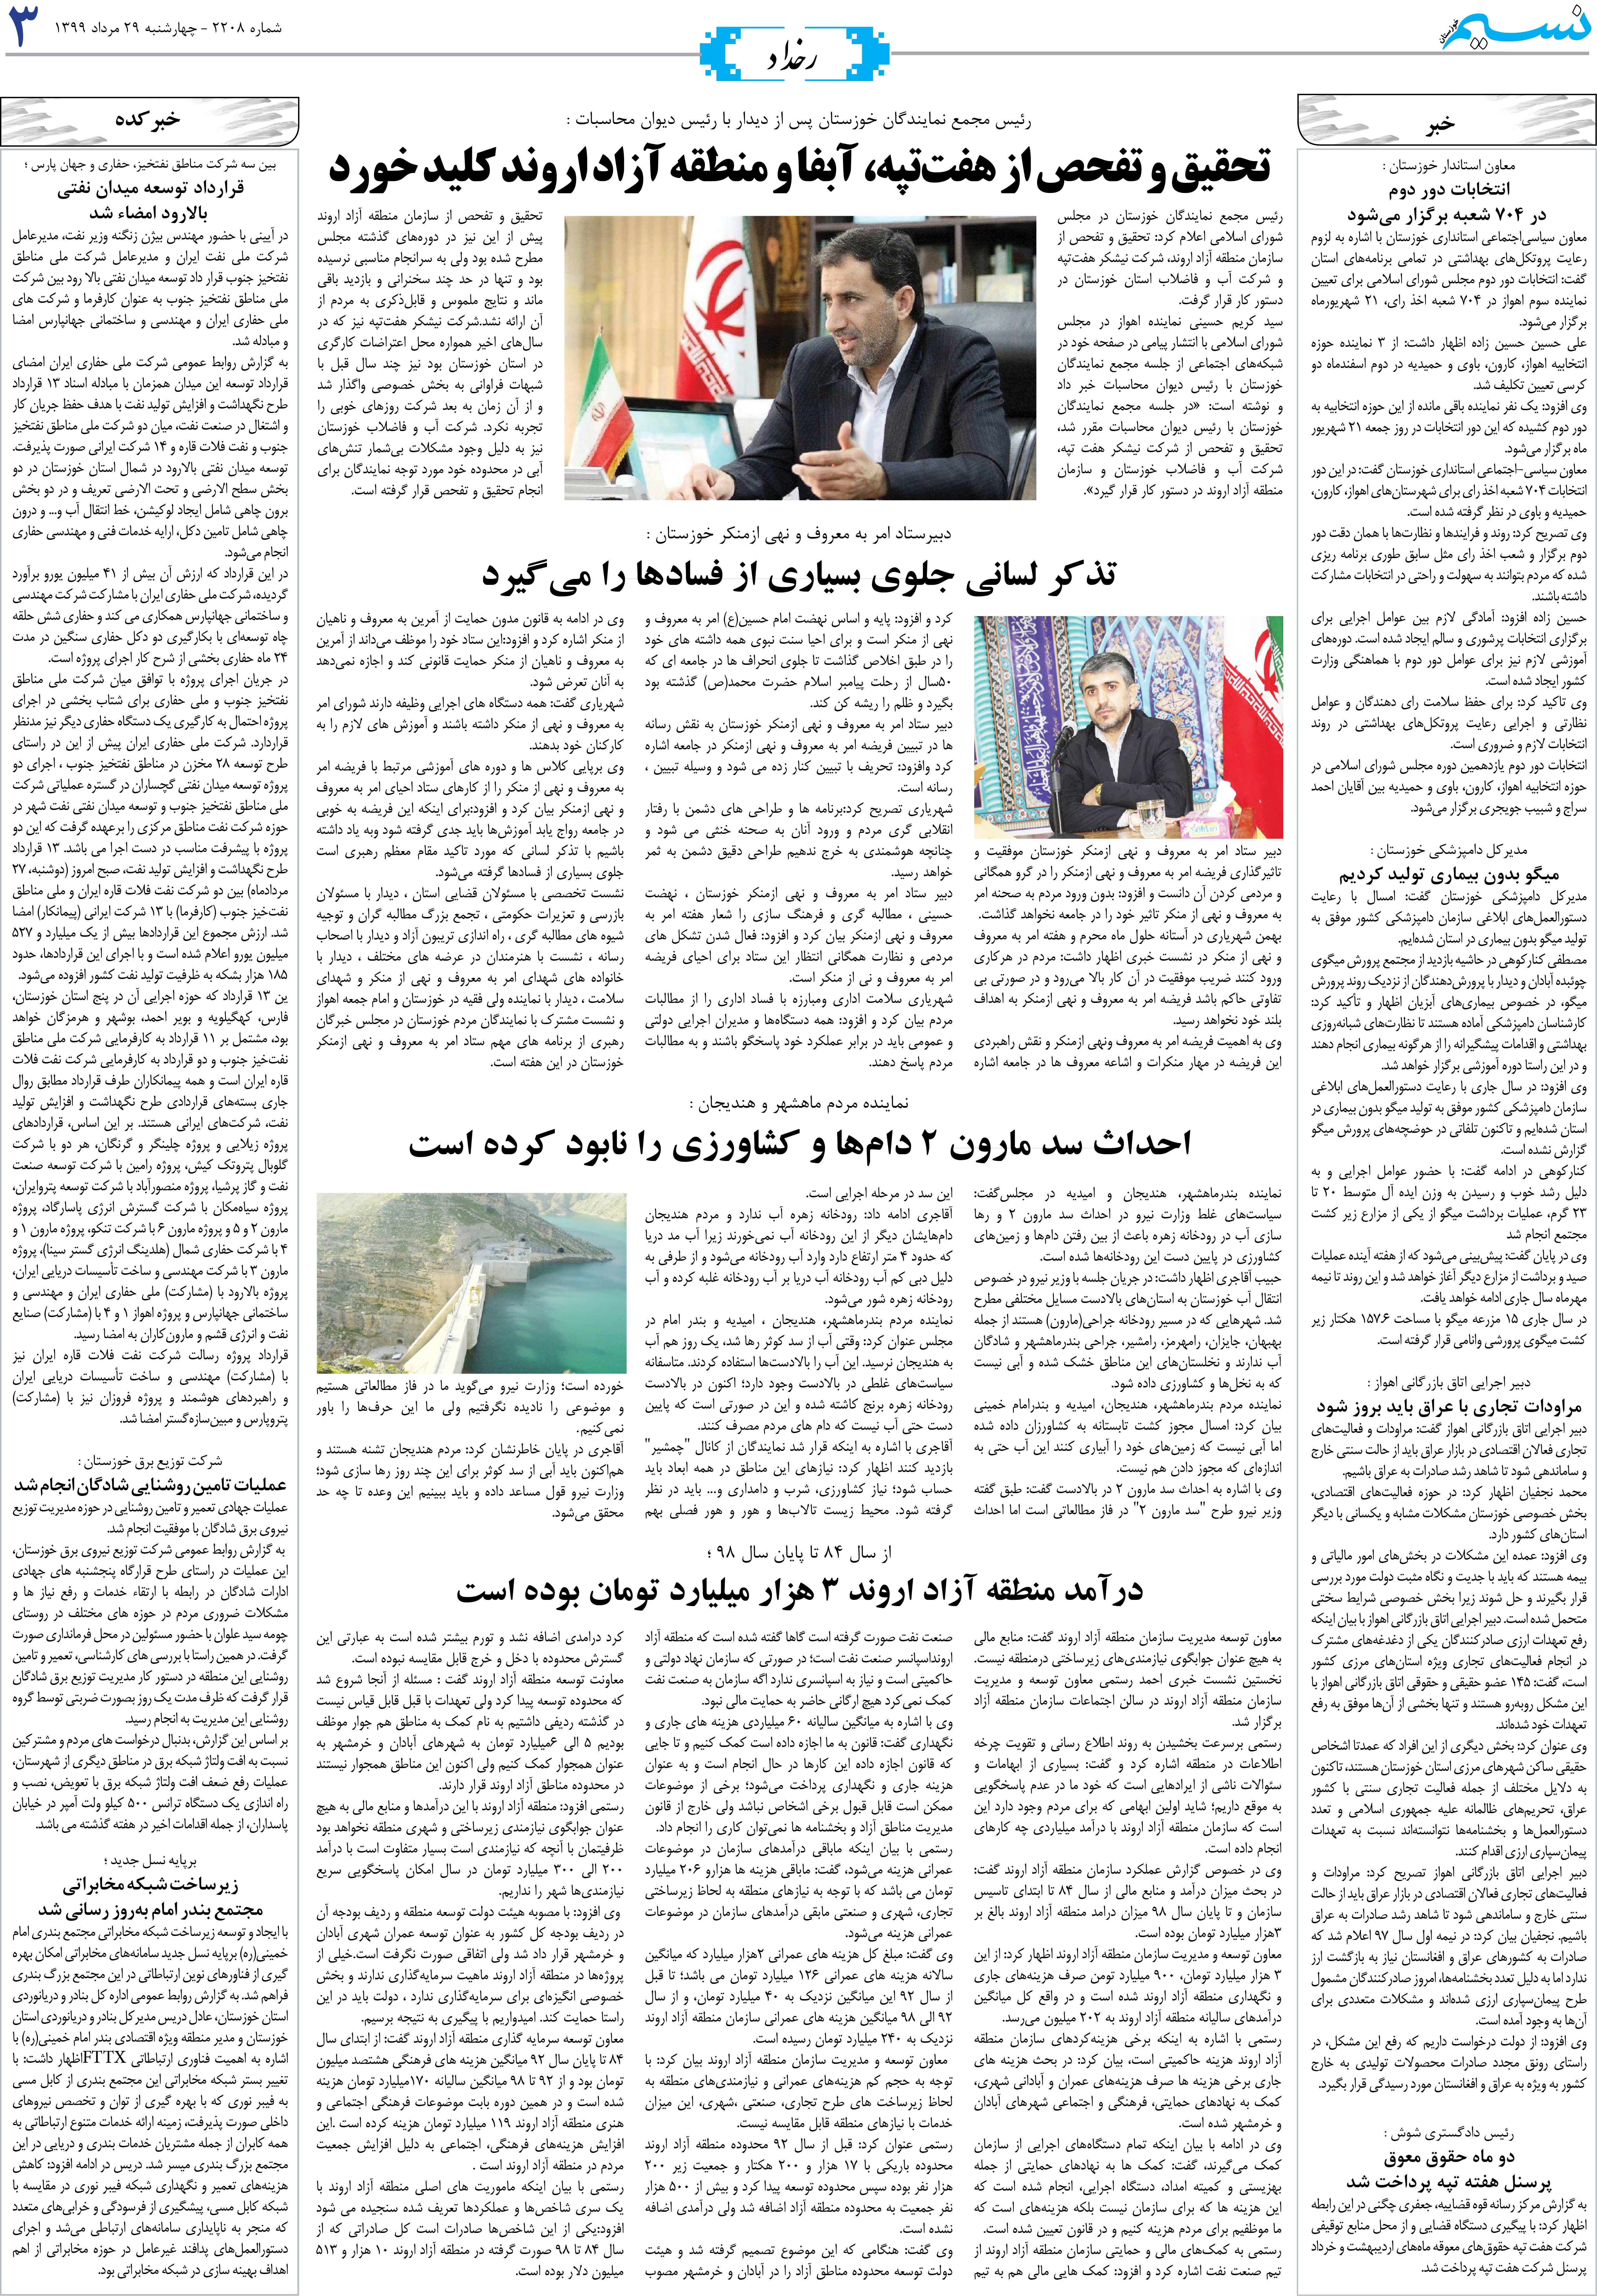 صفحه رخداد روزنامه نسیم شماره 2208